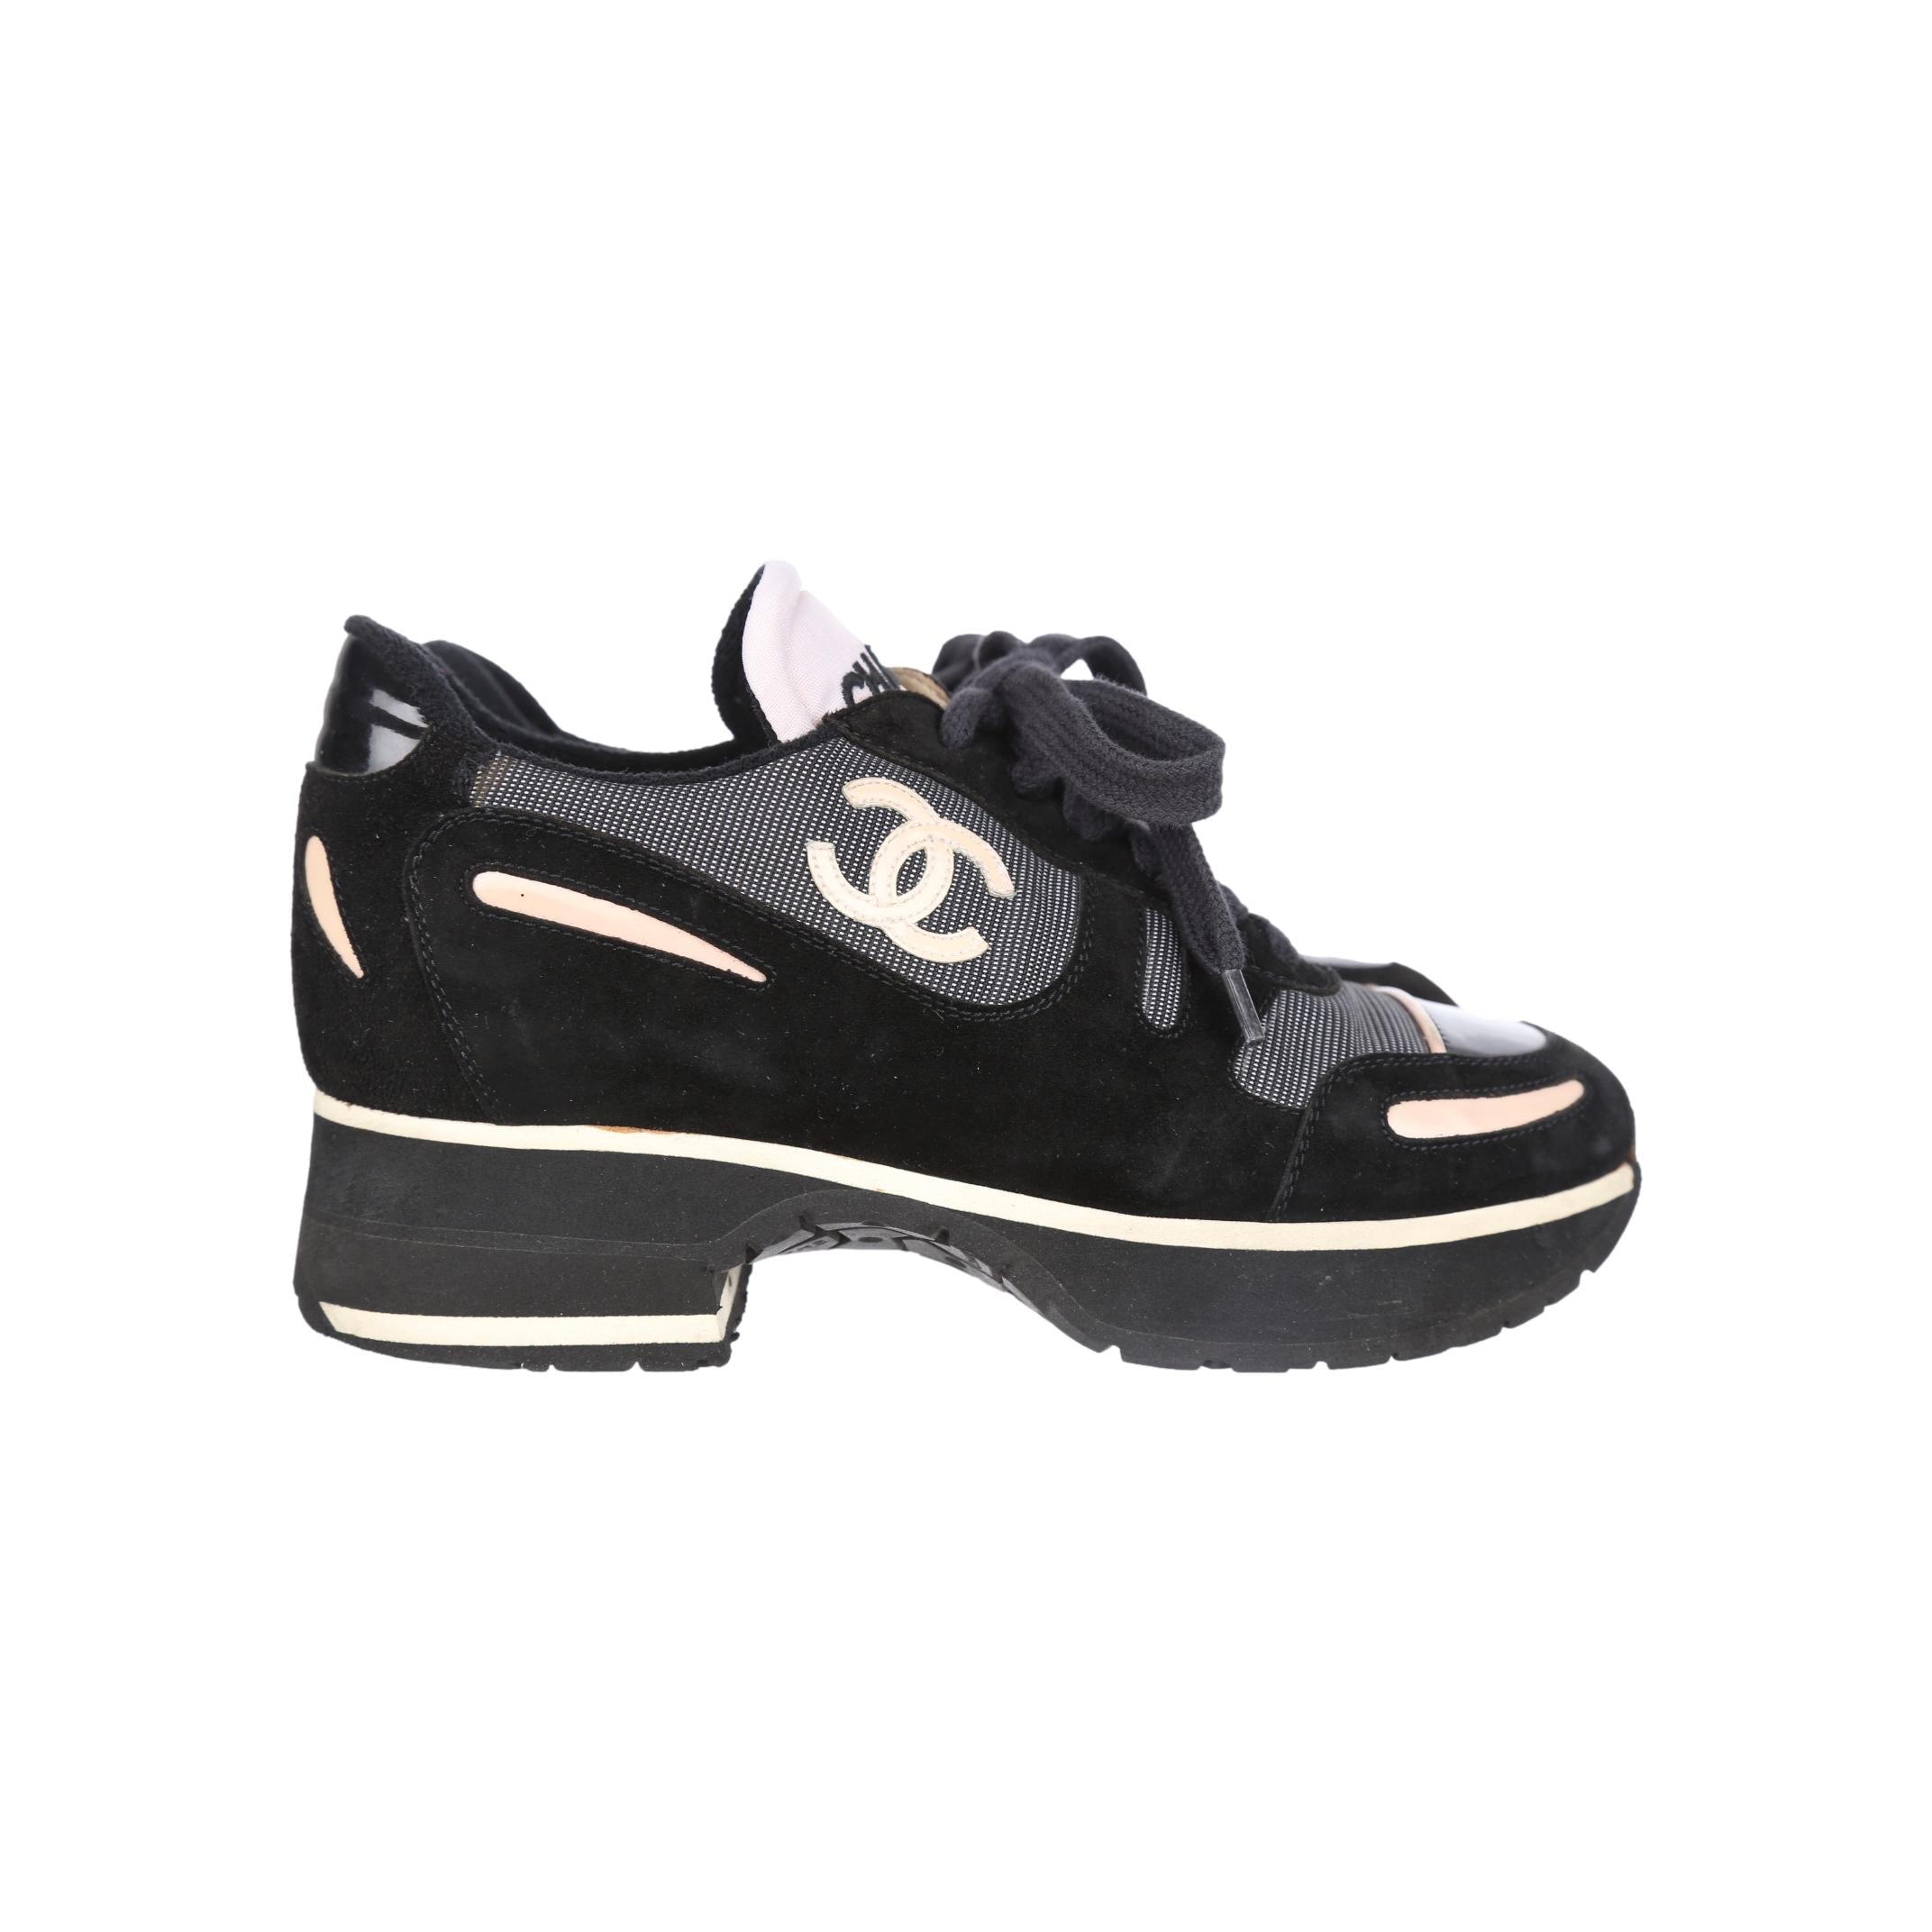 Chanel shoes - Apple O'Shop WholeSale direct sa patahian